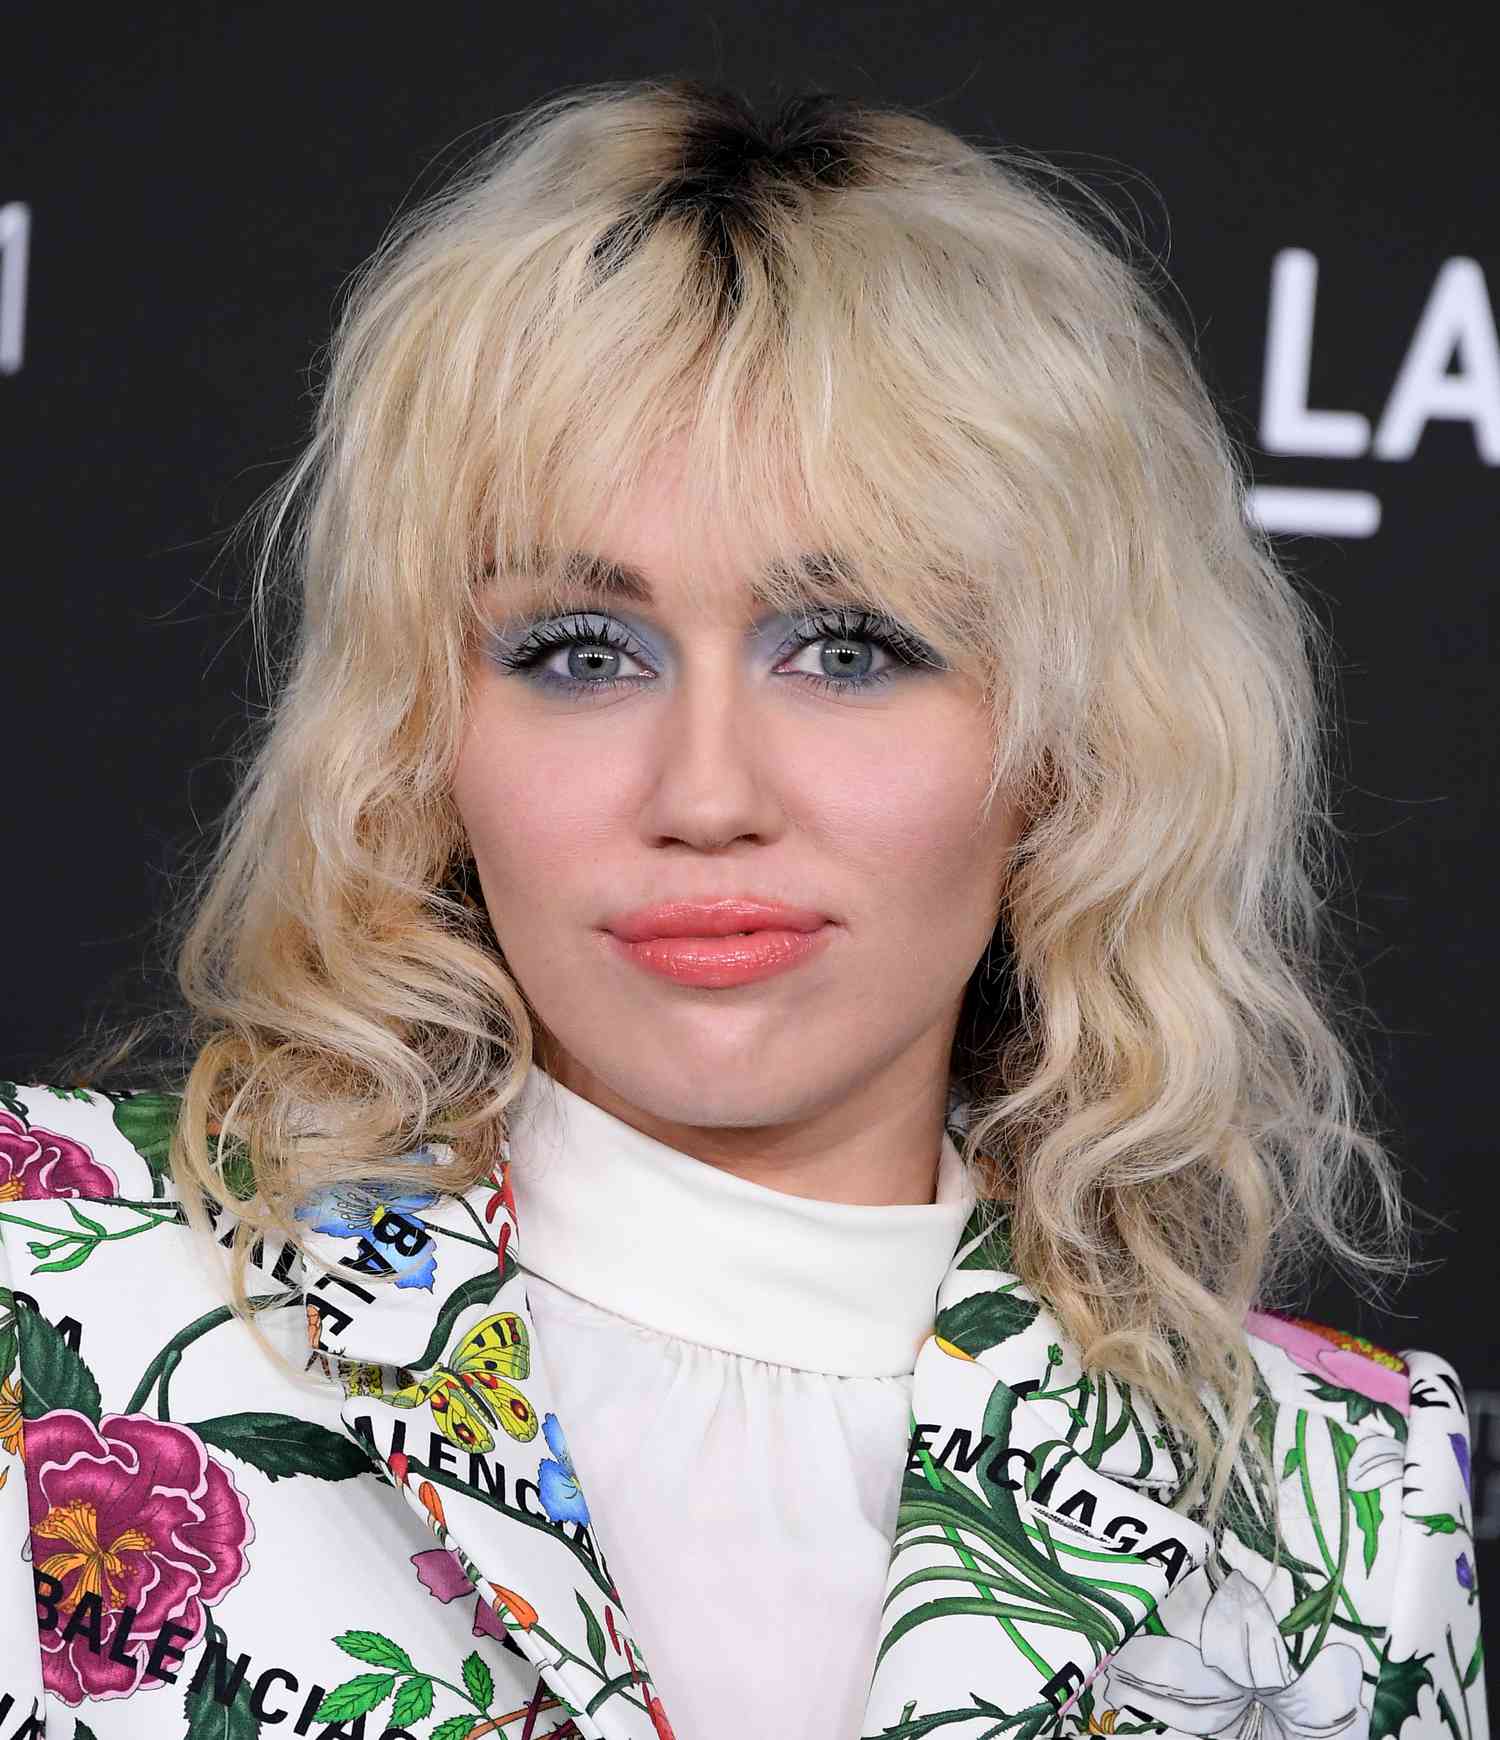 Miley Cyrus arrasa com um corte loiro e um terno floral na 10ª LACMA ART + FILM GALA anual